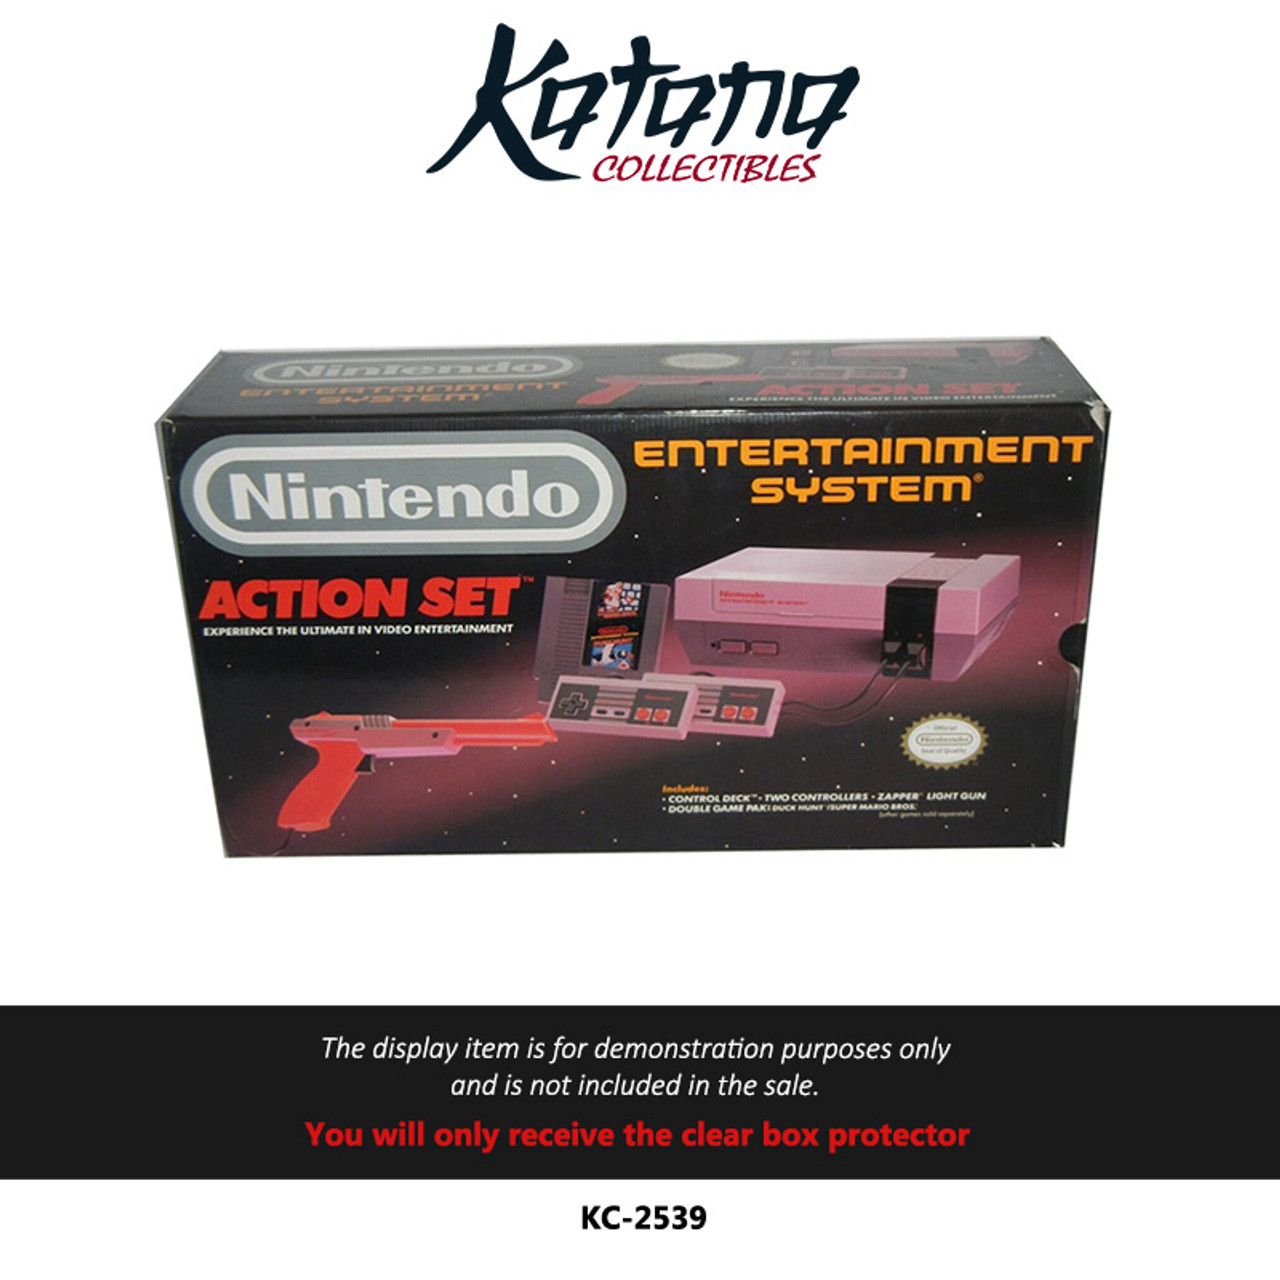 Katana Collectibles Protector For Nintendo Action Set